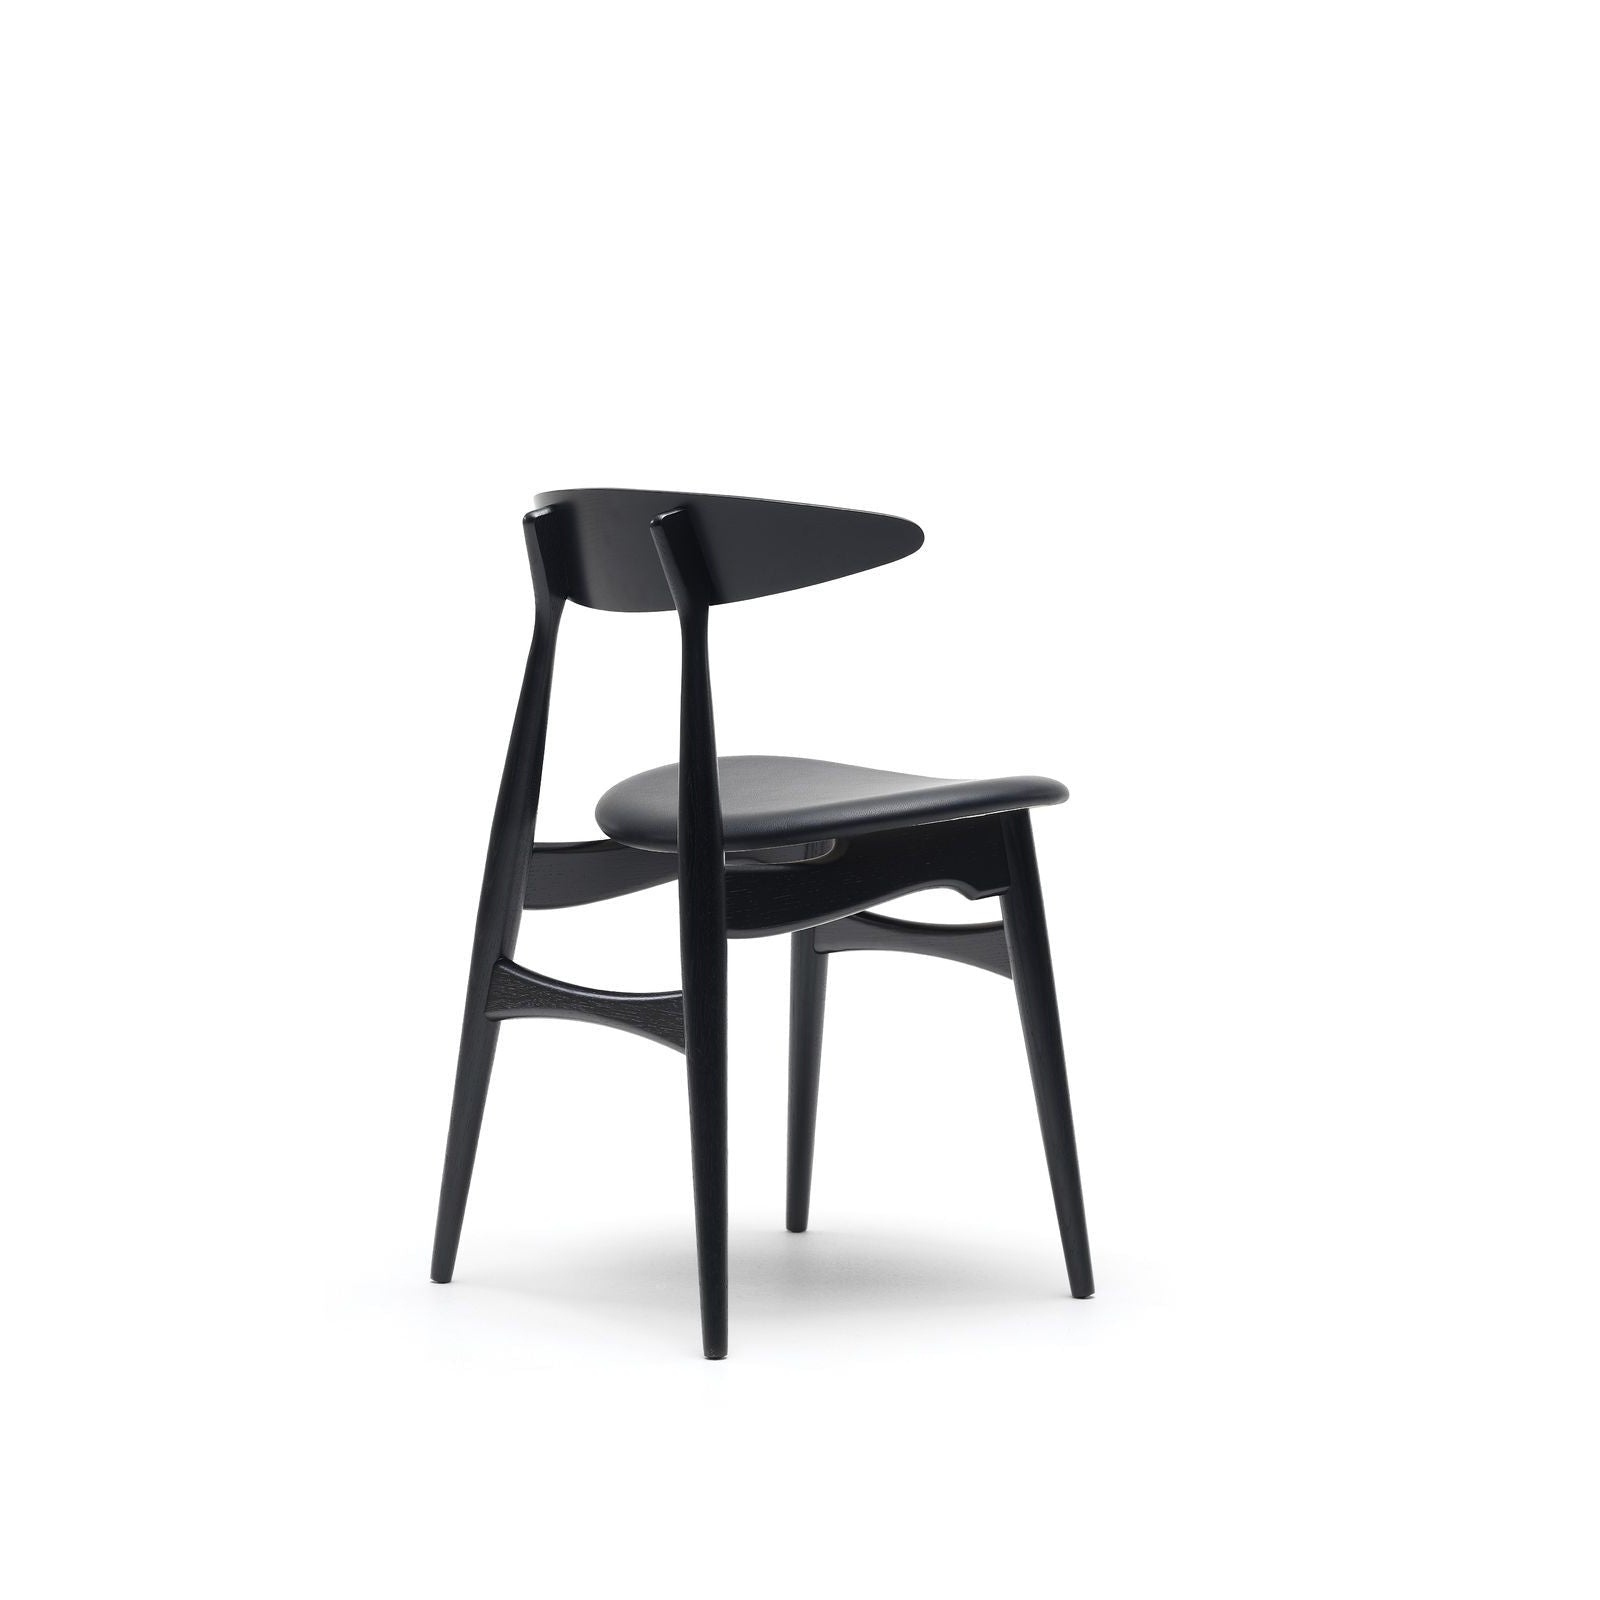 Carl Hansen CH33 P tuoli, musta tammi/musta nahka